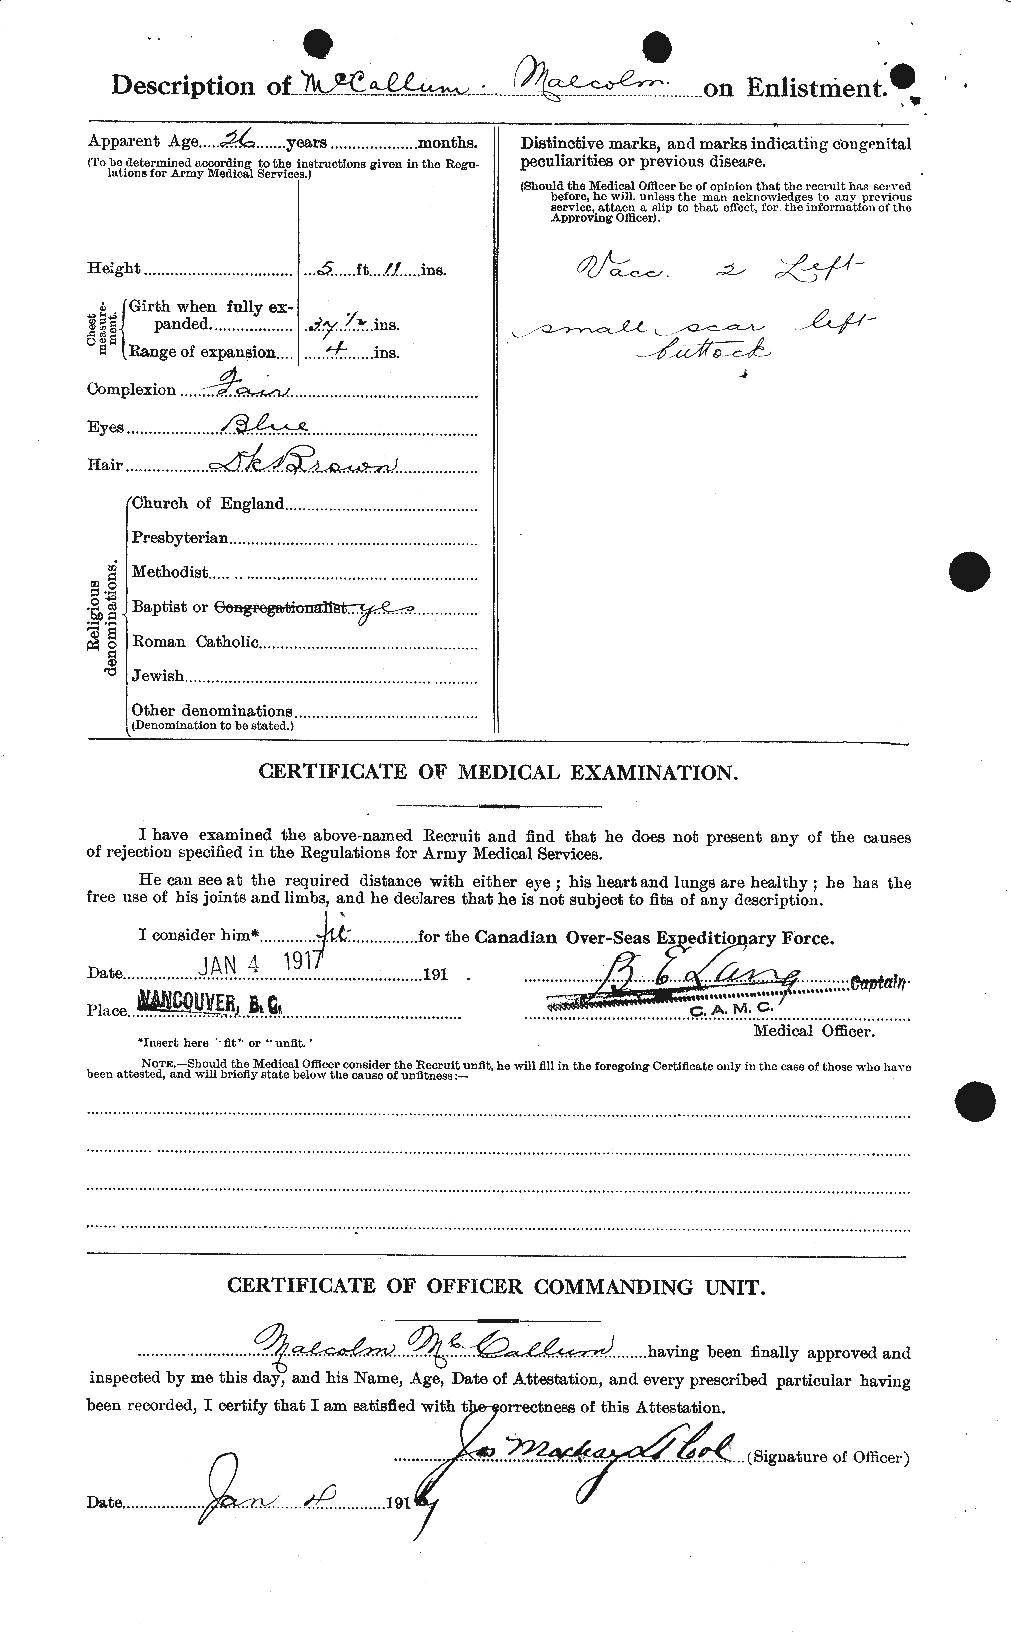 Dossiers du Personnel de la Première Guerre mondiale - CEC 131494b